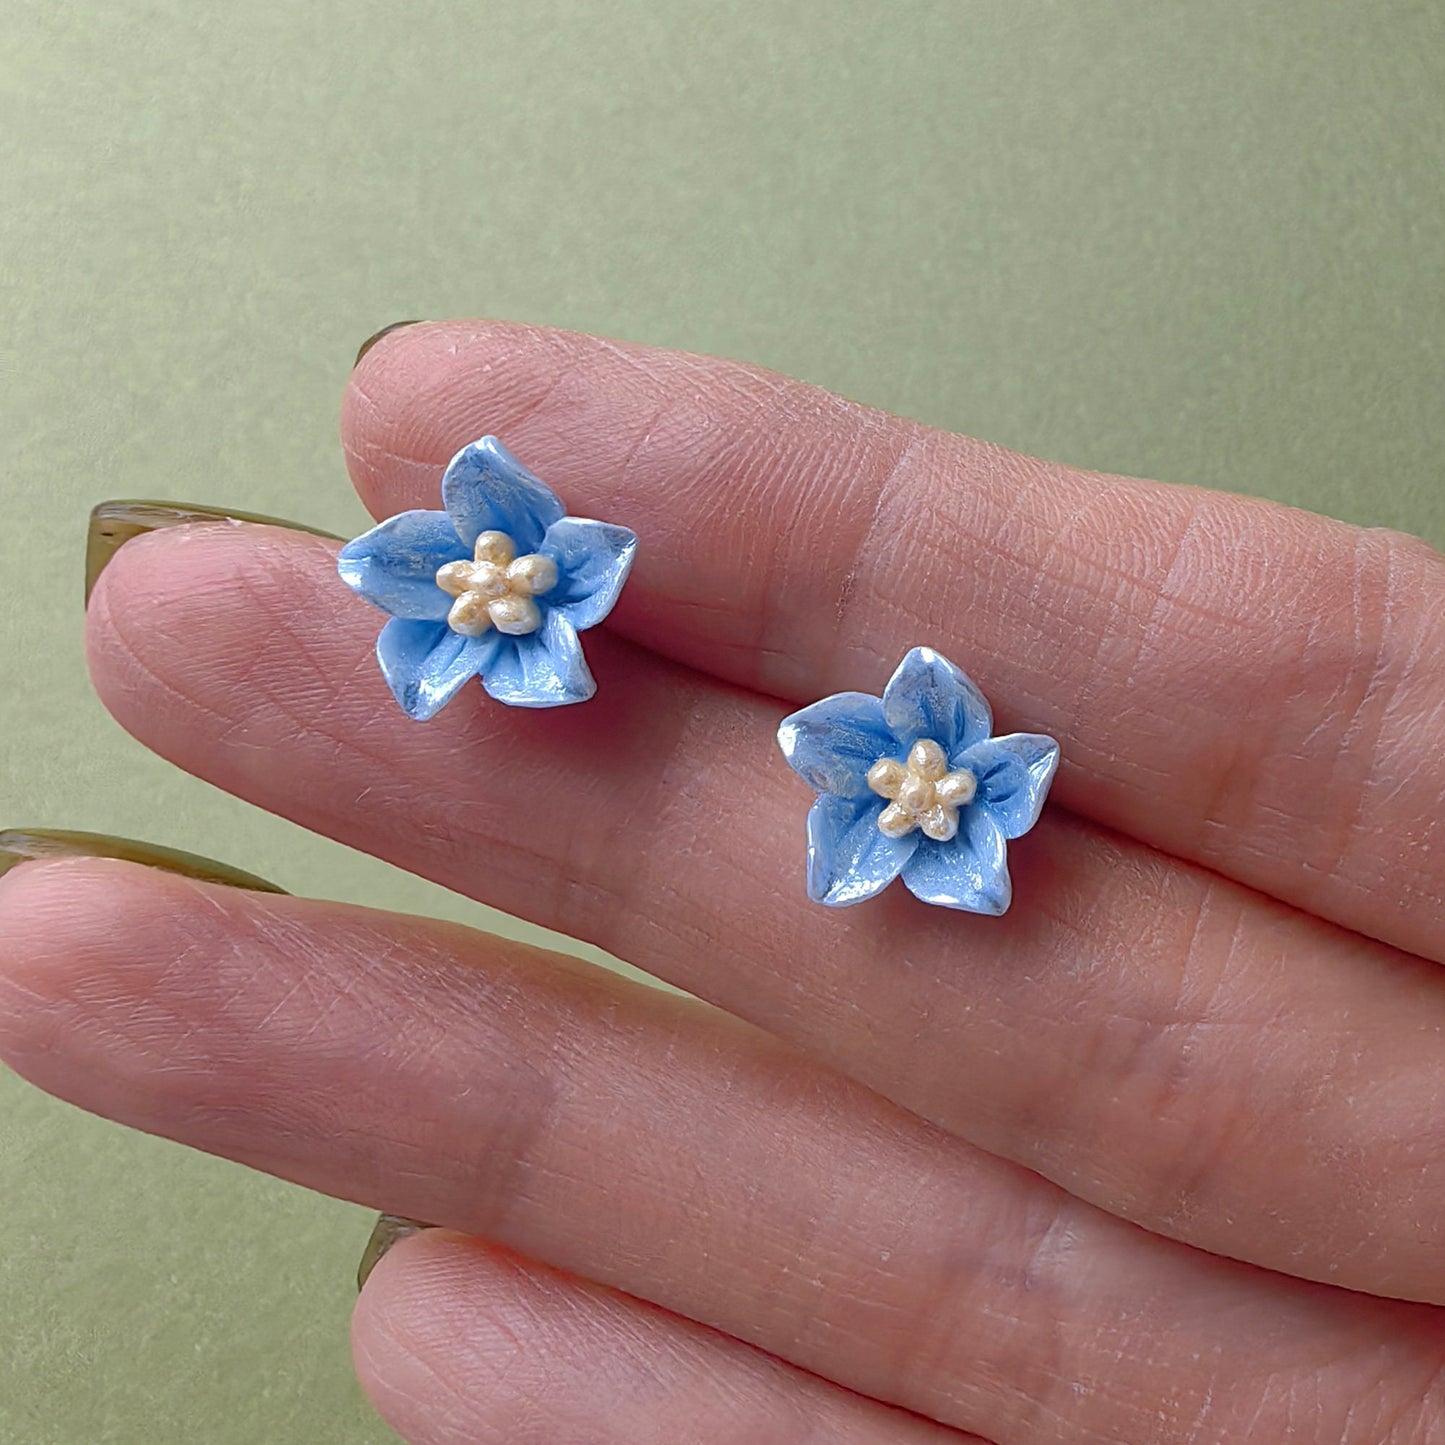 Acrylic Blue Balloon Flower Stud Earrings with Silver Posts Jewellery for Kids Girls Daily Wear 3D Flower Earrings